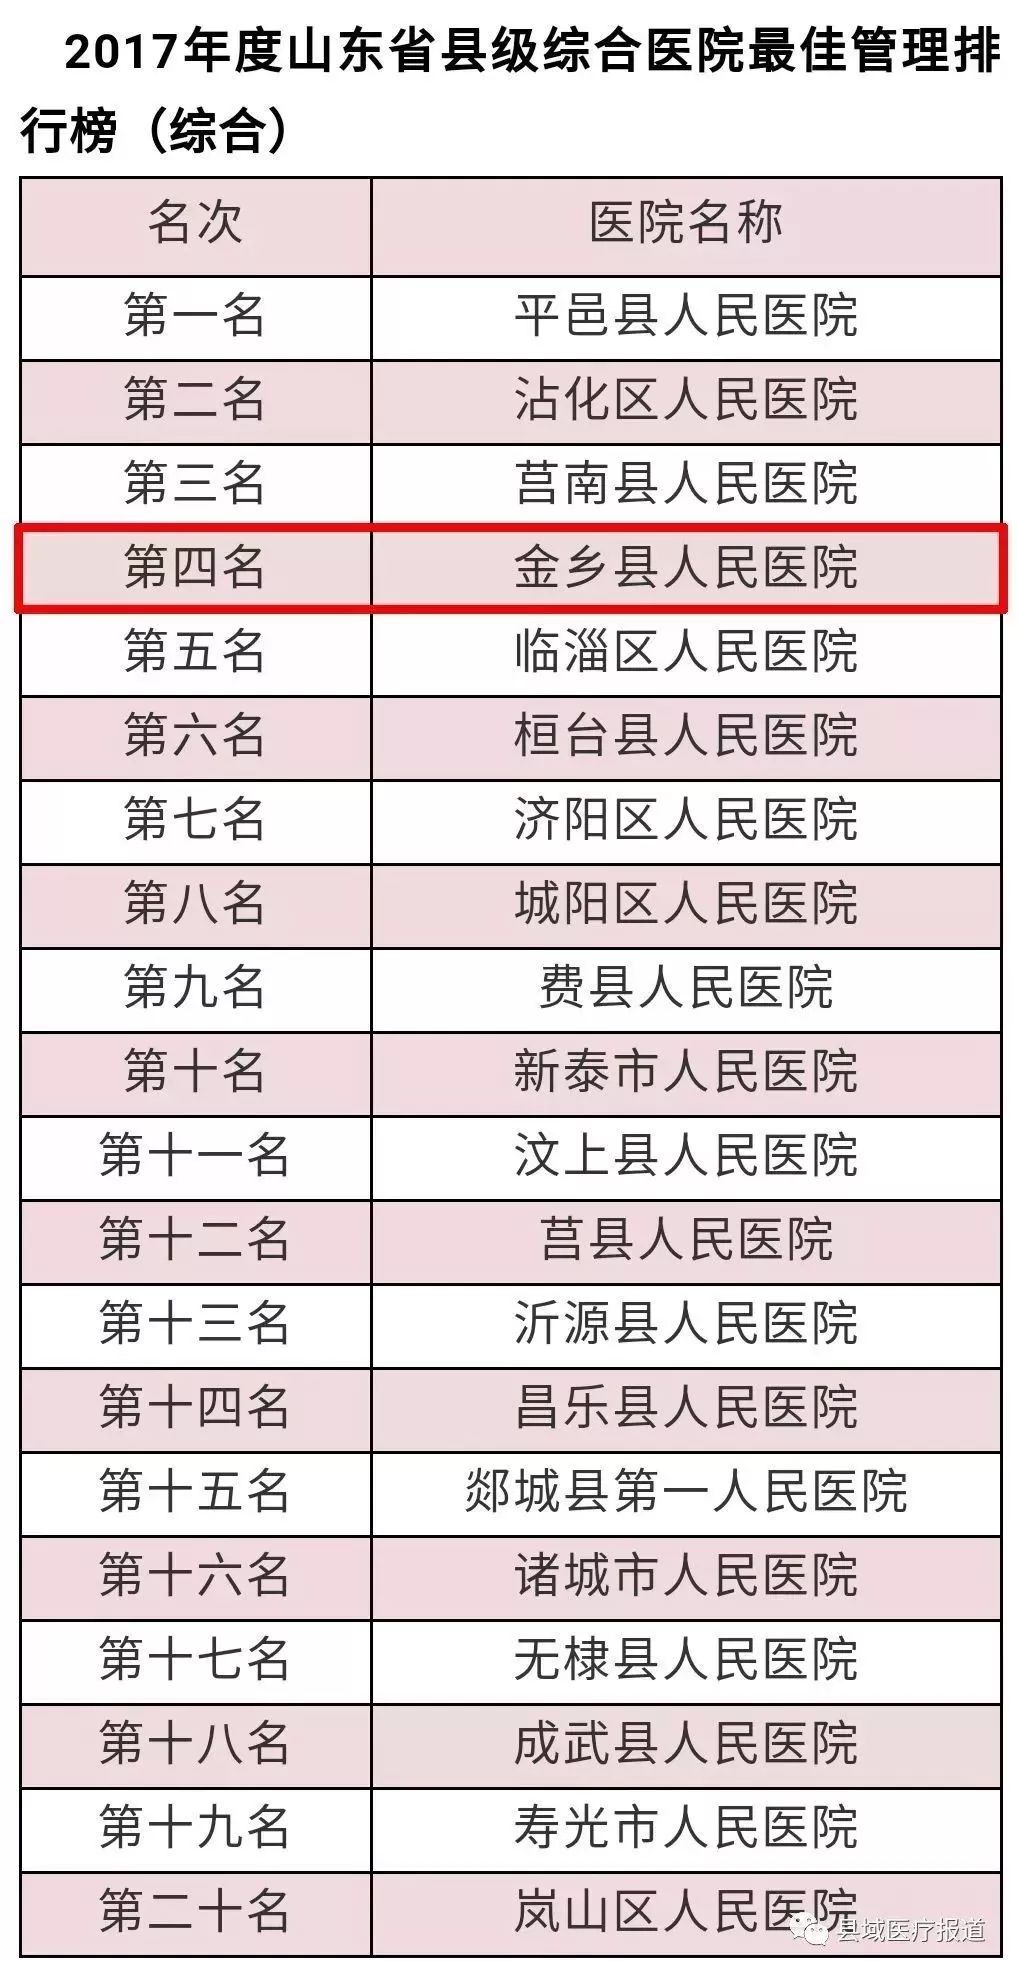 县级医院排行_宝鸡凤翔区医院入选2020年度中国医院竞争力排行榜县级医院500强(2)